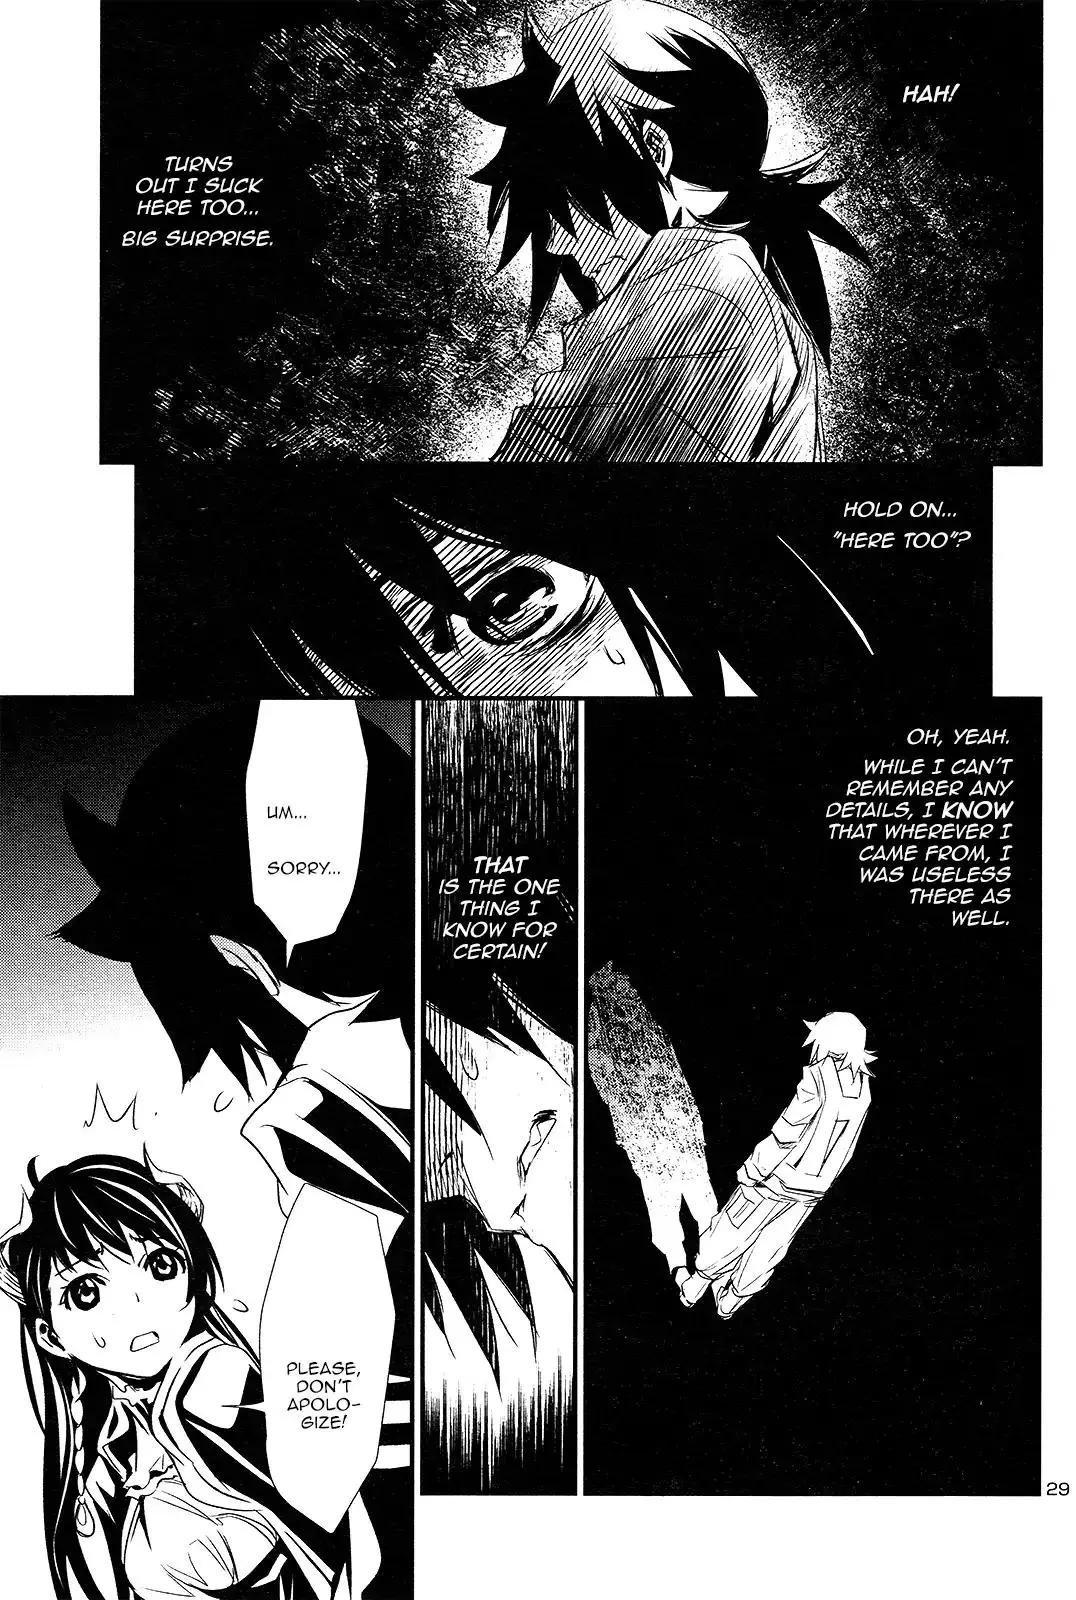 Shinju no Nectar - 1 page 29